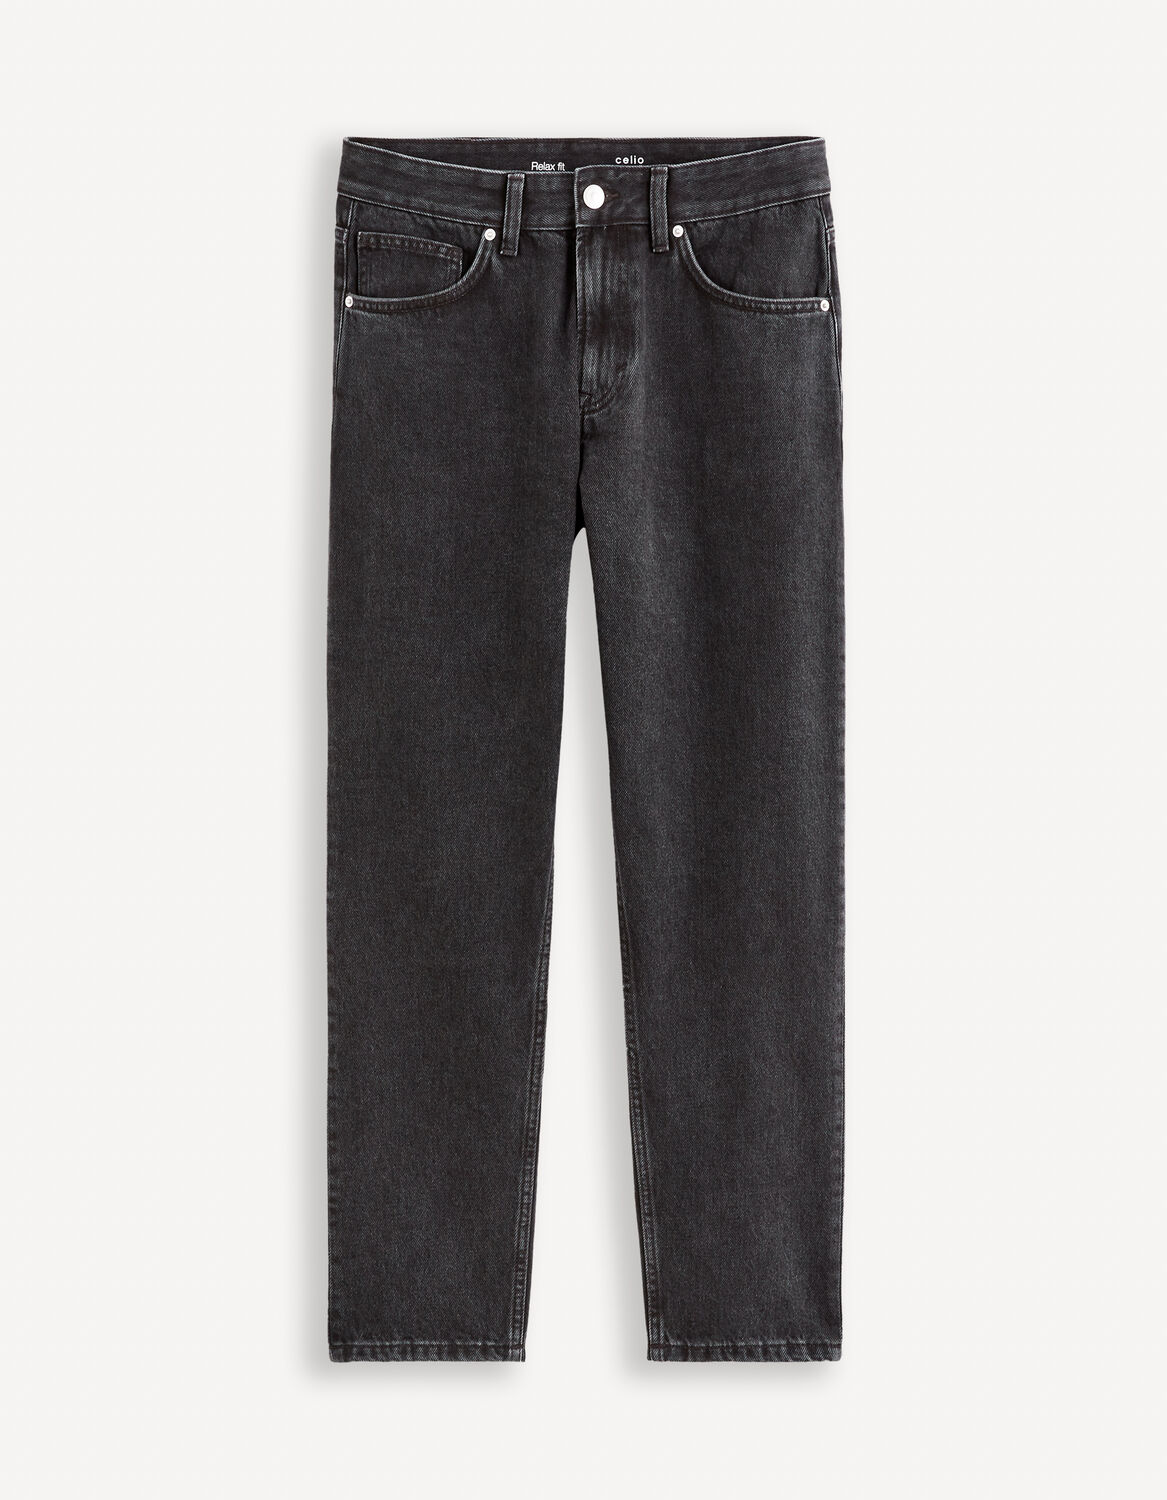 jeans c85 relax 100% coton - noir